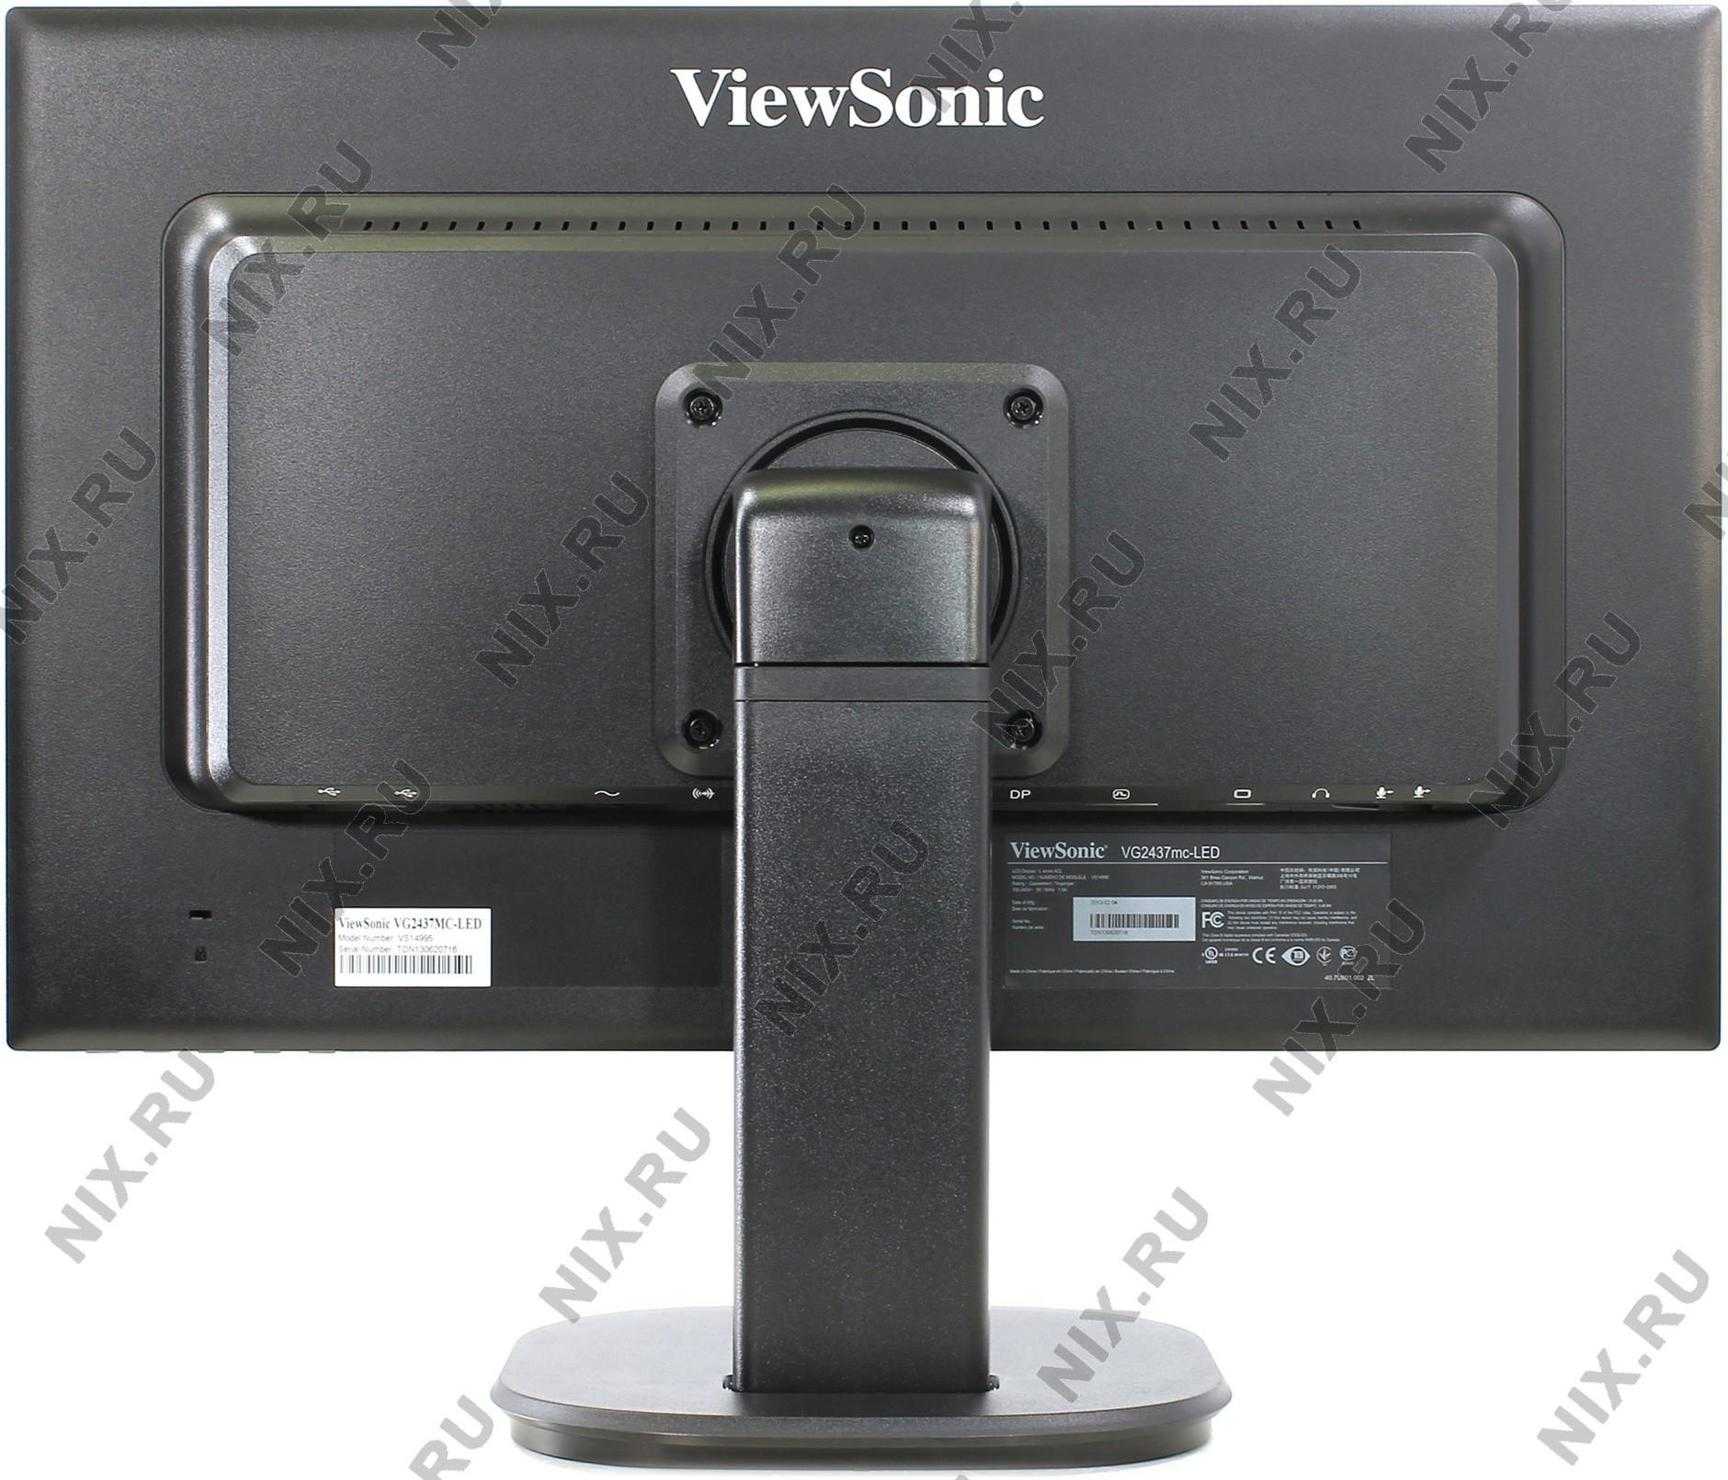 Viewsonic vg2437mc-led купить по акционной цене , отзывы и обзоры.